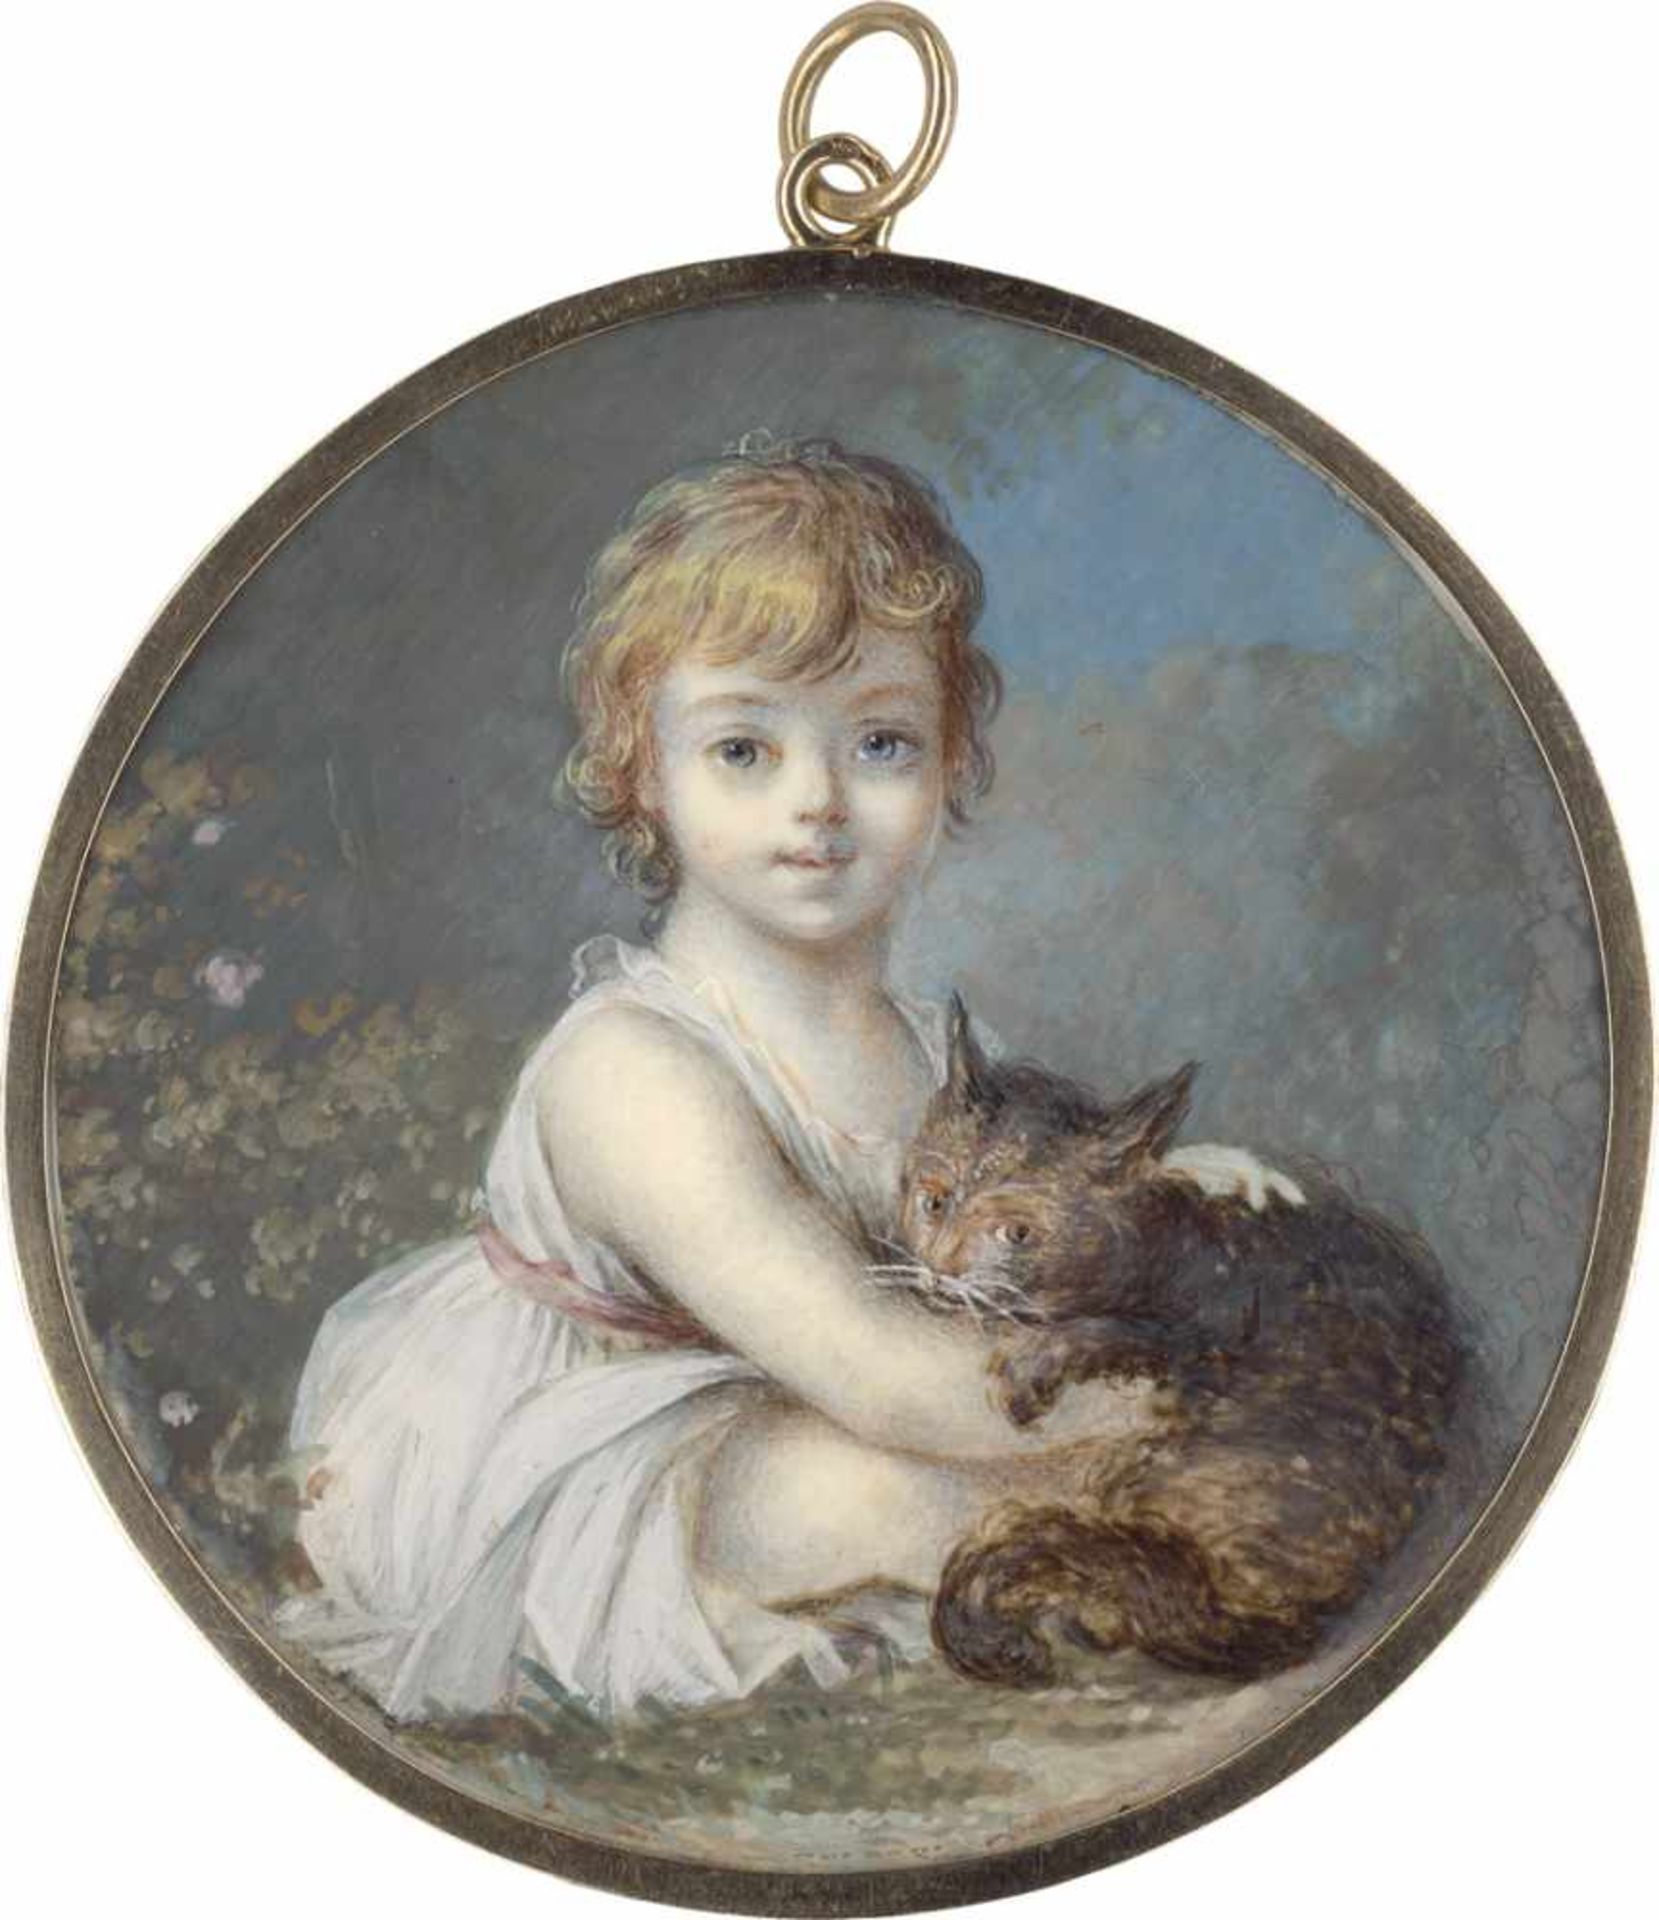 Russisch: um 1795/1800. Bildnis einer braunen Katze in den Armen eines sitzenden Kindesum 1795/1800.